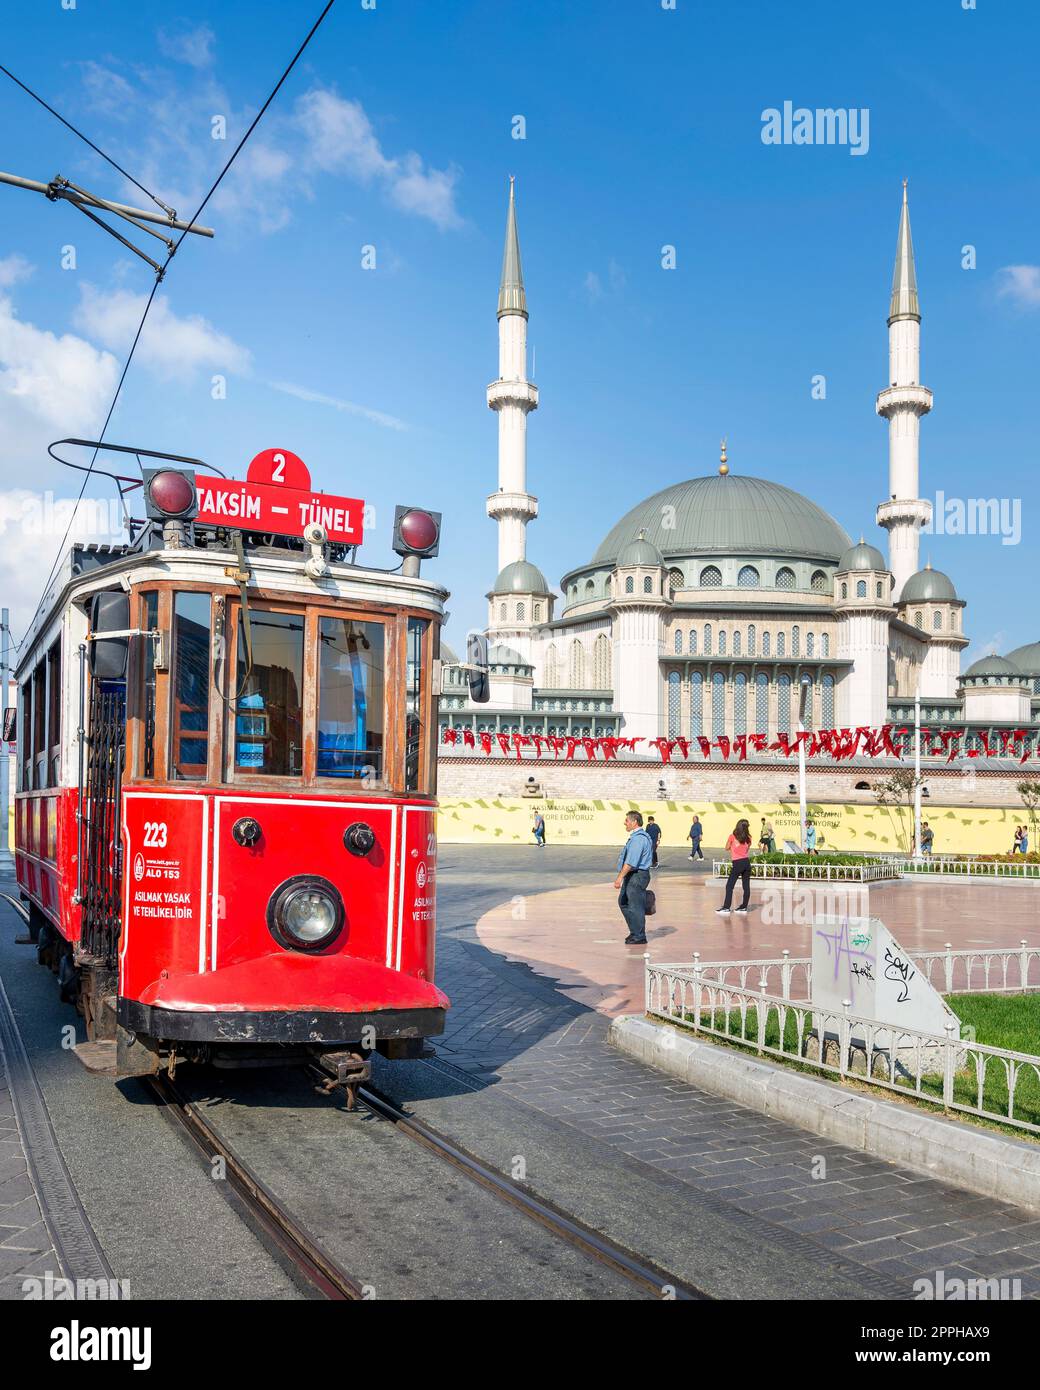 Nostalgico tram rosso Taksim Tunel, o tram, con la Moschea Taksim sullo sfondo, in Piazza Taksim, Istanbul, Turchia Foto Stock